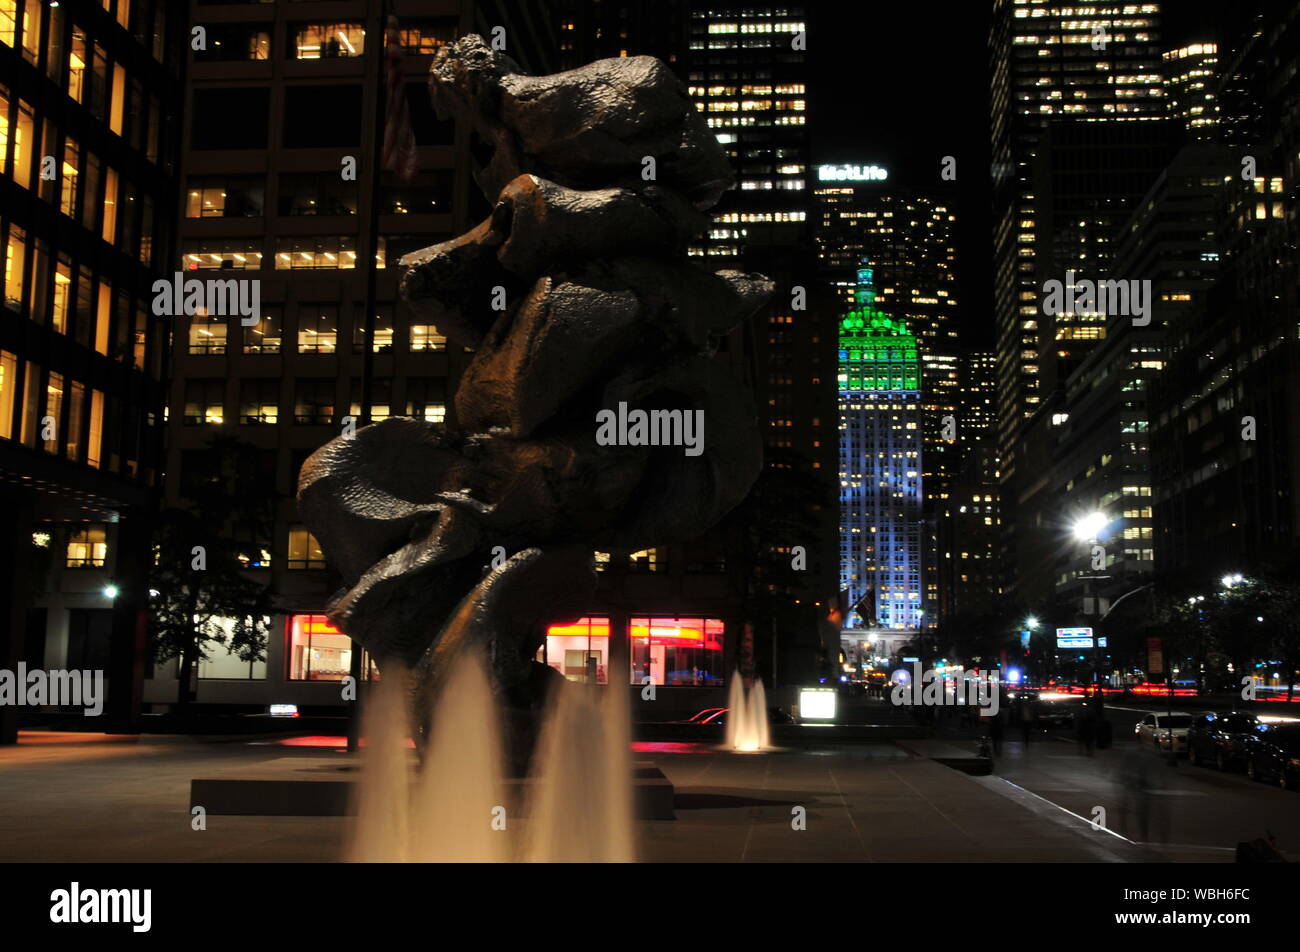 Sculpture In Illuminated City At Night Stock Photo